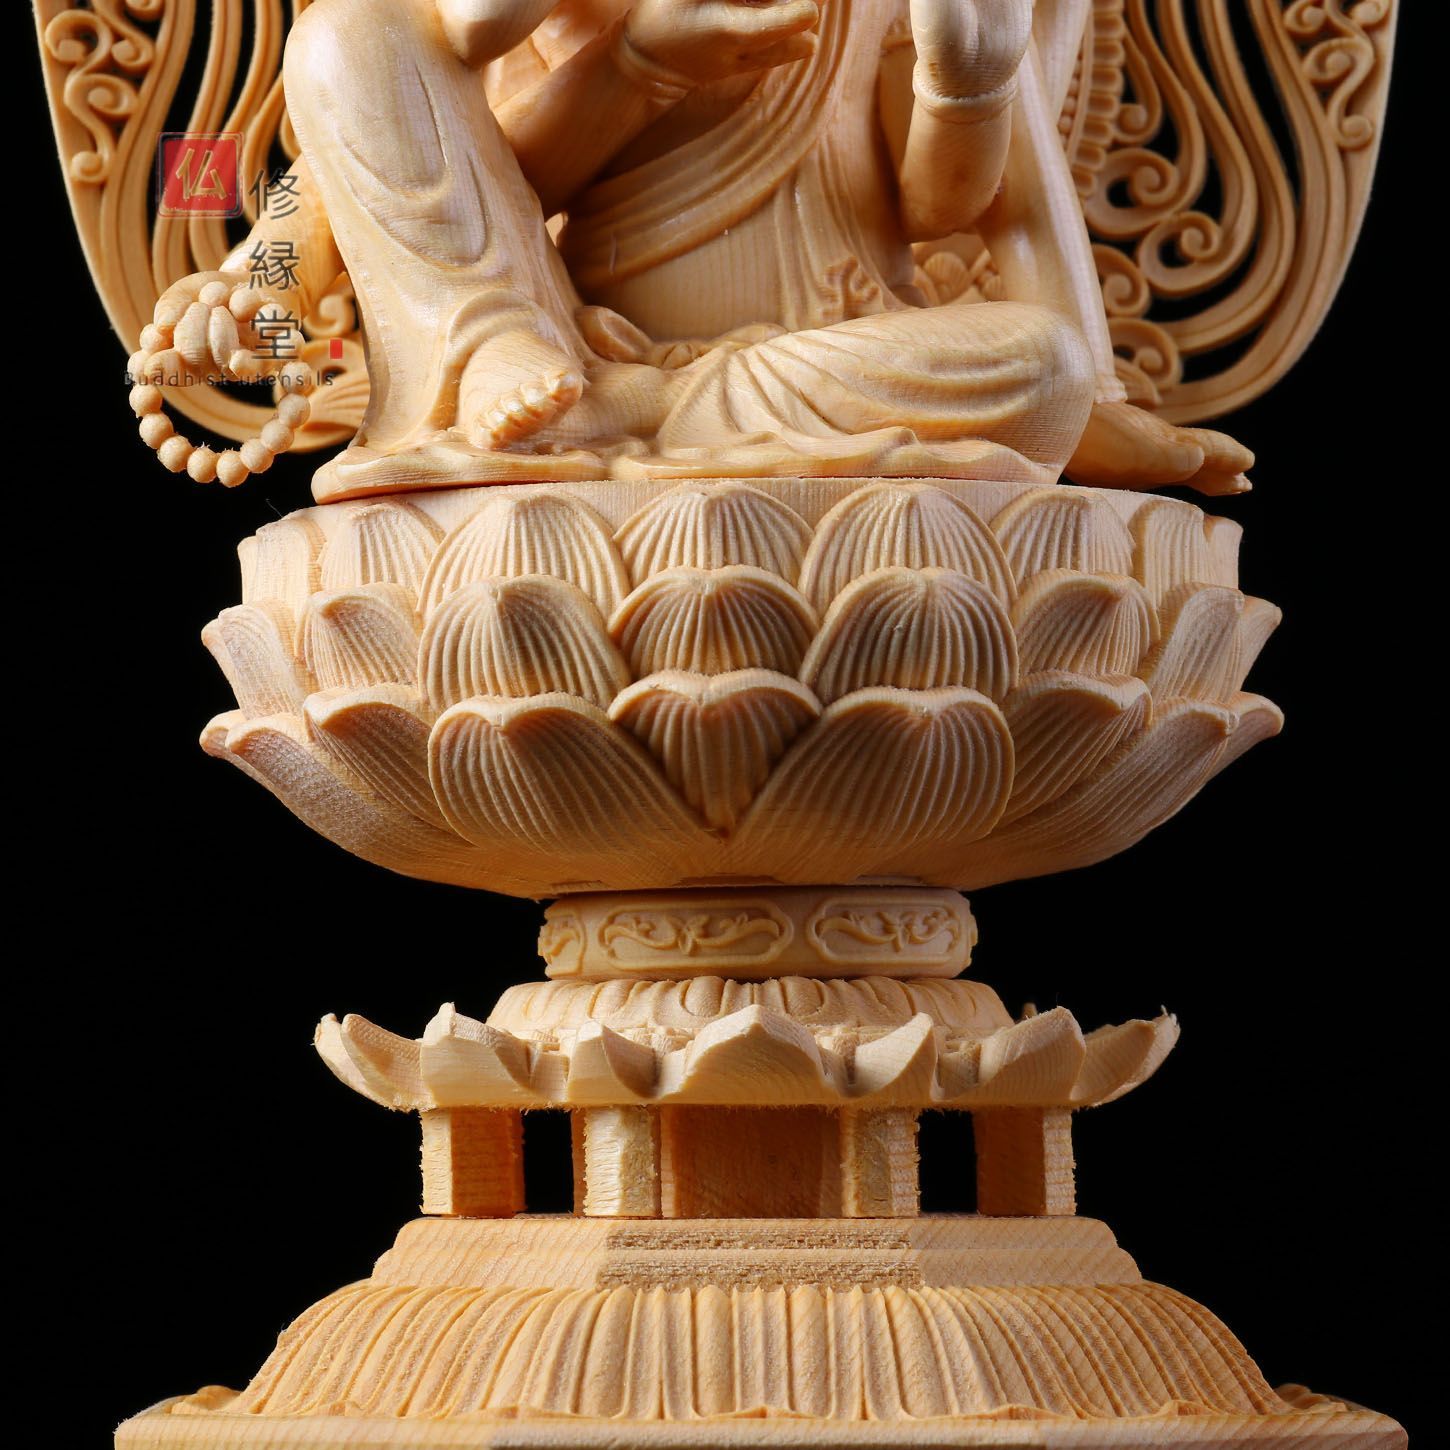 まもなく販売 【修縁堂】木彫り 仏像 如意輪観音菩薩座像 彫刻 天然木